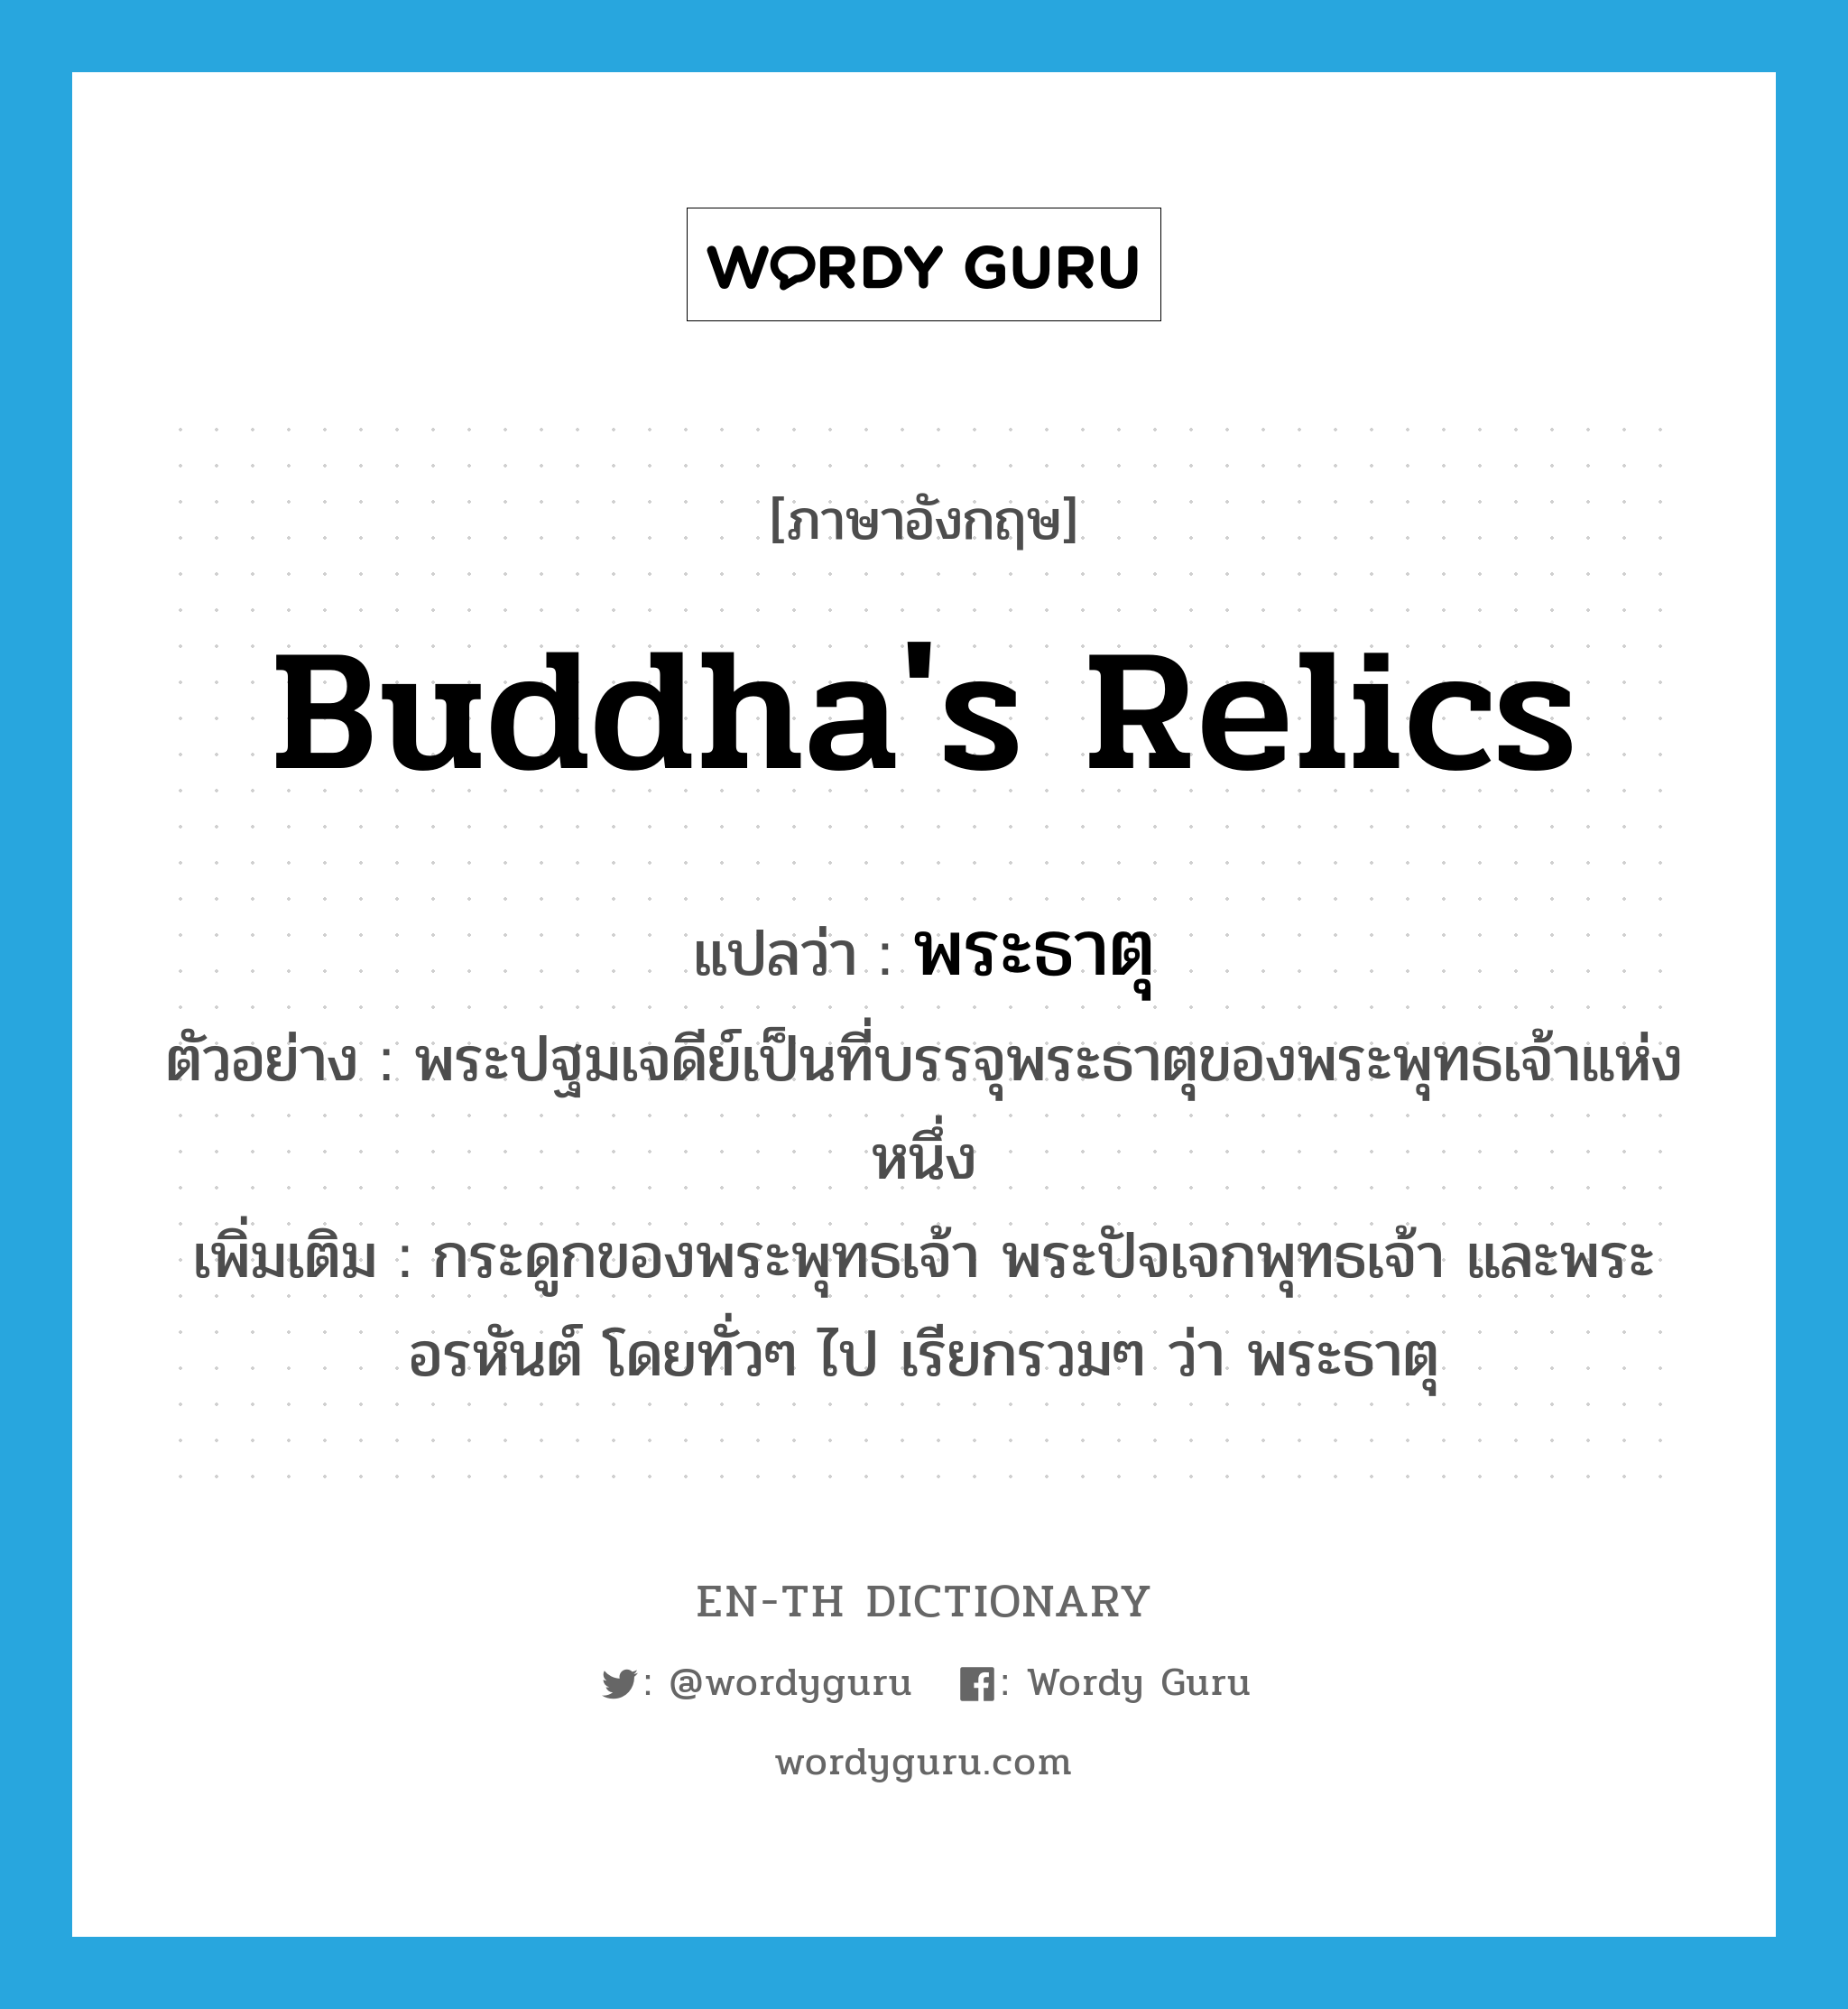 Buddha's relics แปลว่า?, คำศัพท์ภาษาอังกฤษ Buddha's relics แปลว่า พระธาตุ ประเภท N ตัวอย่าง พระปฐมเจดีย์เป็นที่บรรจุพระธาตุของพระพุทธเจ้าแห่งหนึ่ง เพิ่มเติม กระดูกของพระพุทธเจ้า พระปัจเจกพุทธเจ้า และพระอรหันต์ โดยทั่วๆ ไป เรียกรวมๆ ว่า พระธาตุ หมวด N